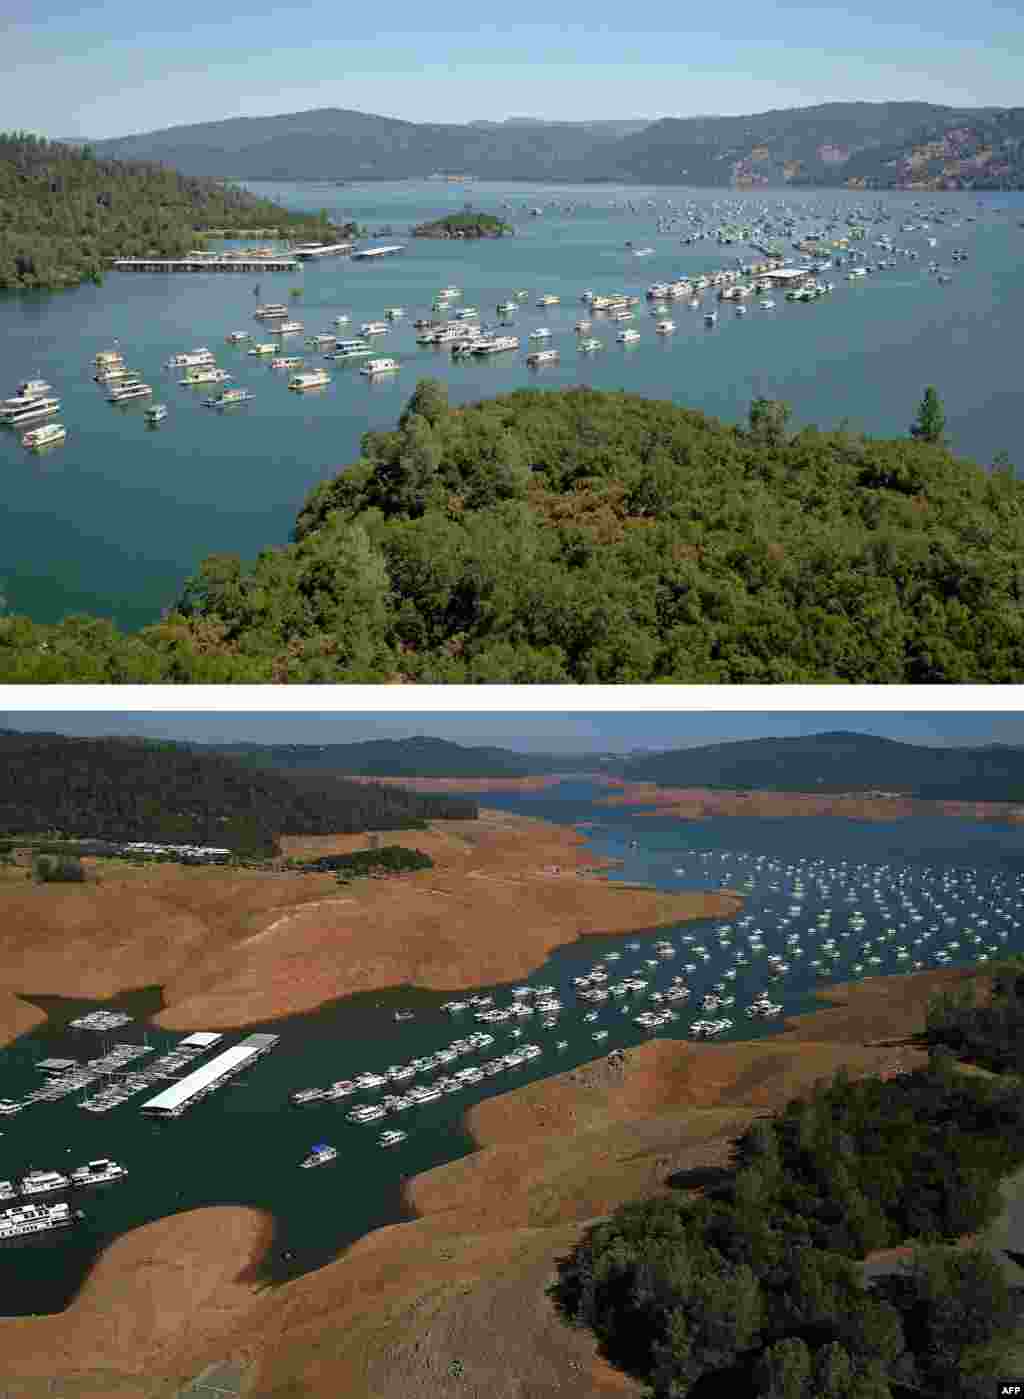 加州连续三年遭遇严重干旱。图为2011年7月20日的奥罗维尔湖（上）和2014年8月19日的奥罗维尔湖（下）。